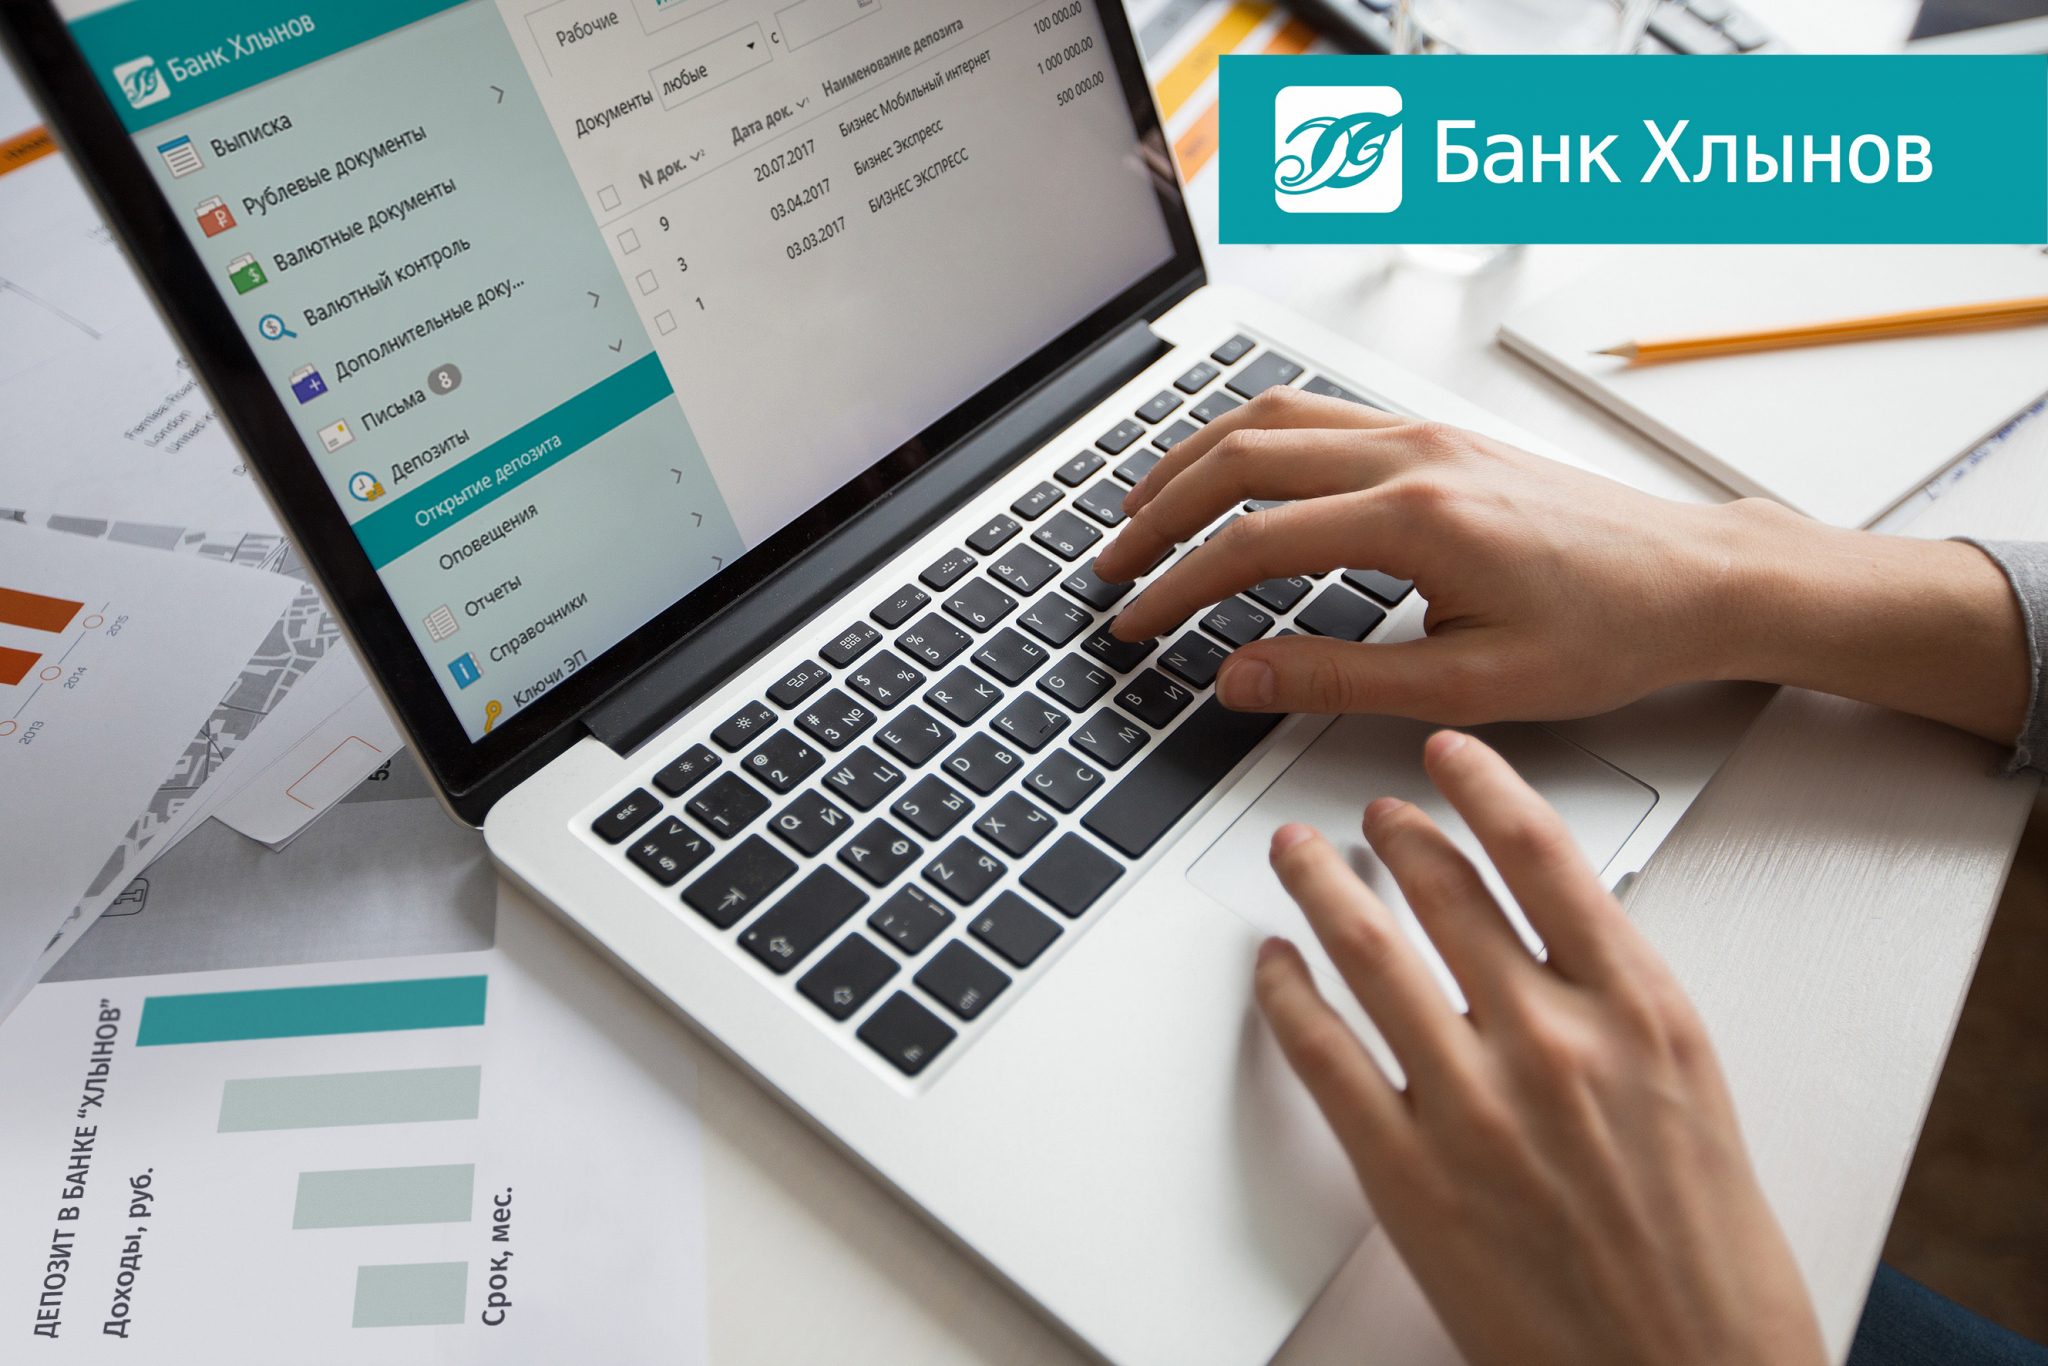 Решили открыть депозит? Воспользуйтесь сервисом для бизнеса «Депозит iBank» от банка «Хлынов».